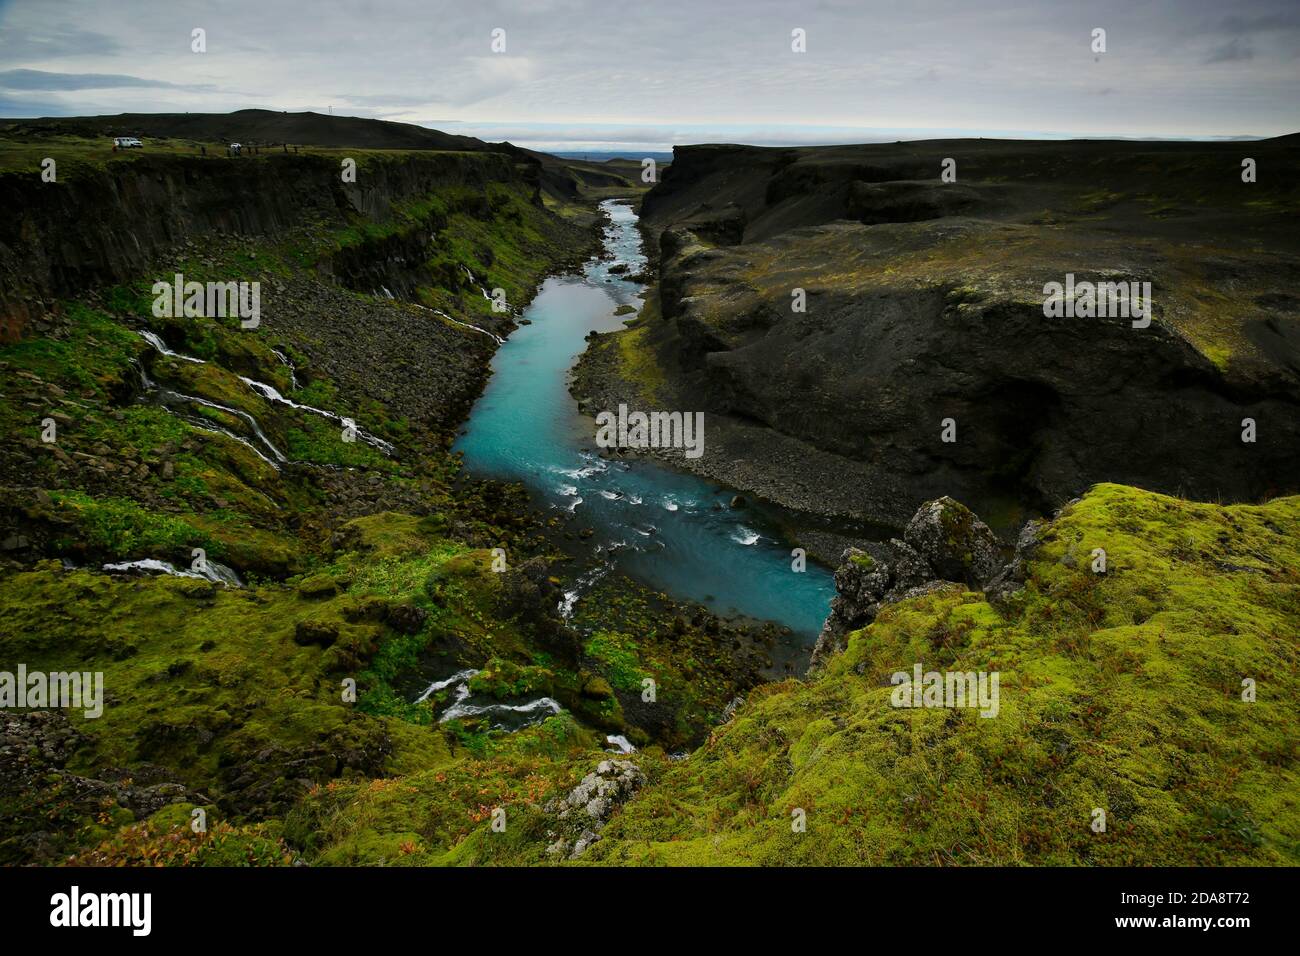 Rivière et de nombreuses petites cascades à travers le canyon de Sigoldugljufur, dans les hautes terres islandaises Banque D'Images